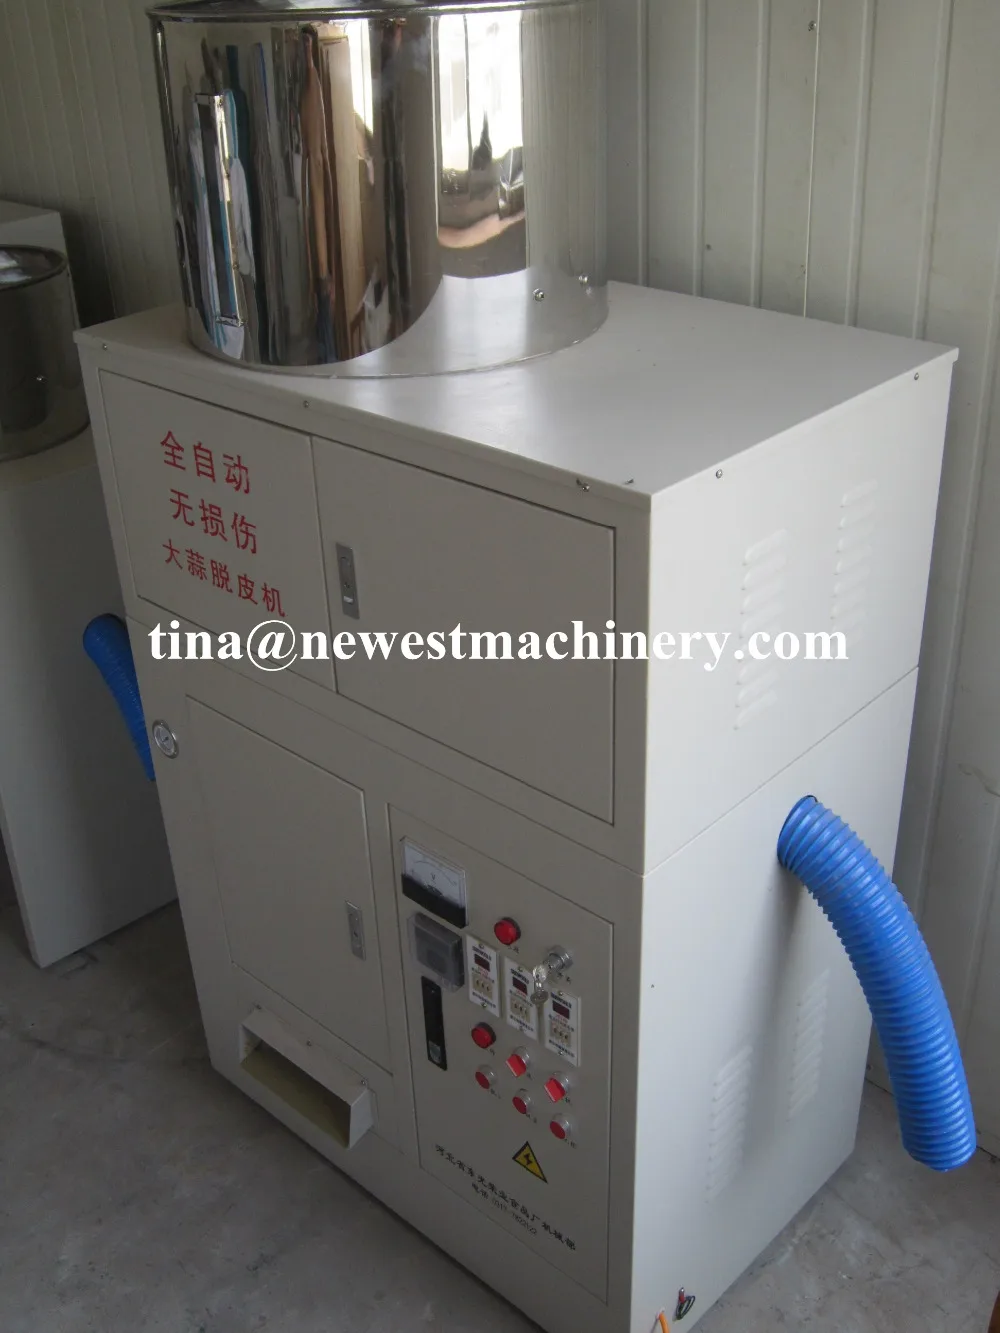 NT-200A заводская цена Расширенный дизайн электрическая чеснокочистка/машина для чистки чеснока цена низкая